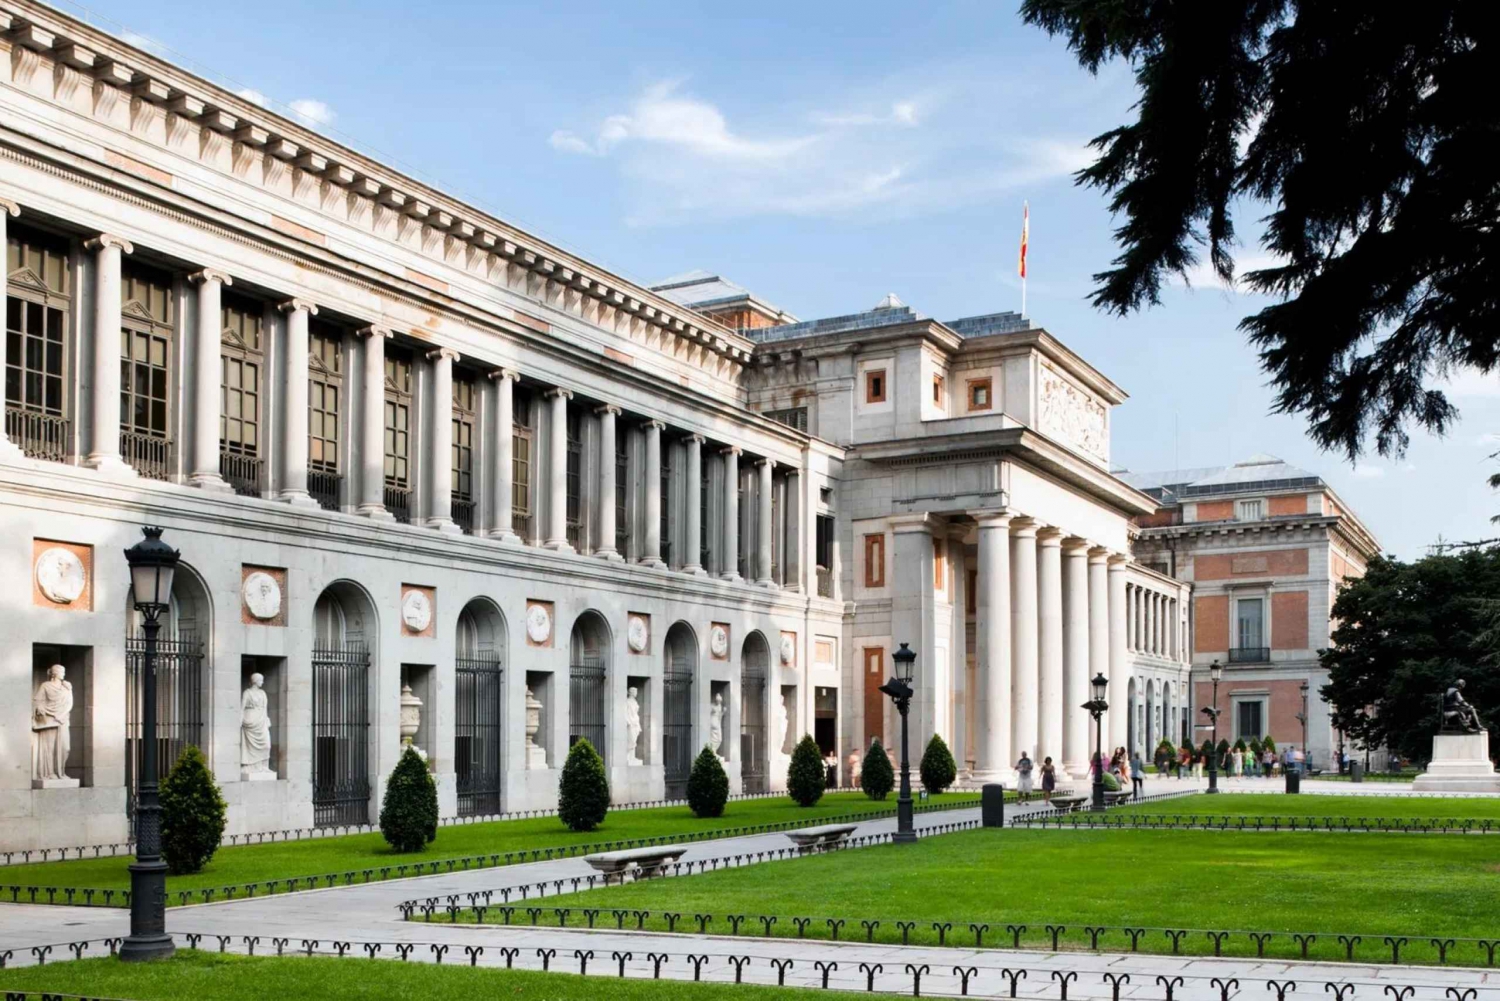 Ekspert-guidet: Rejse til Prado-museet